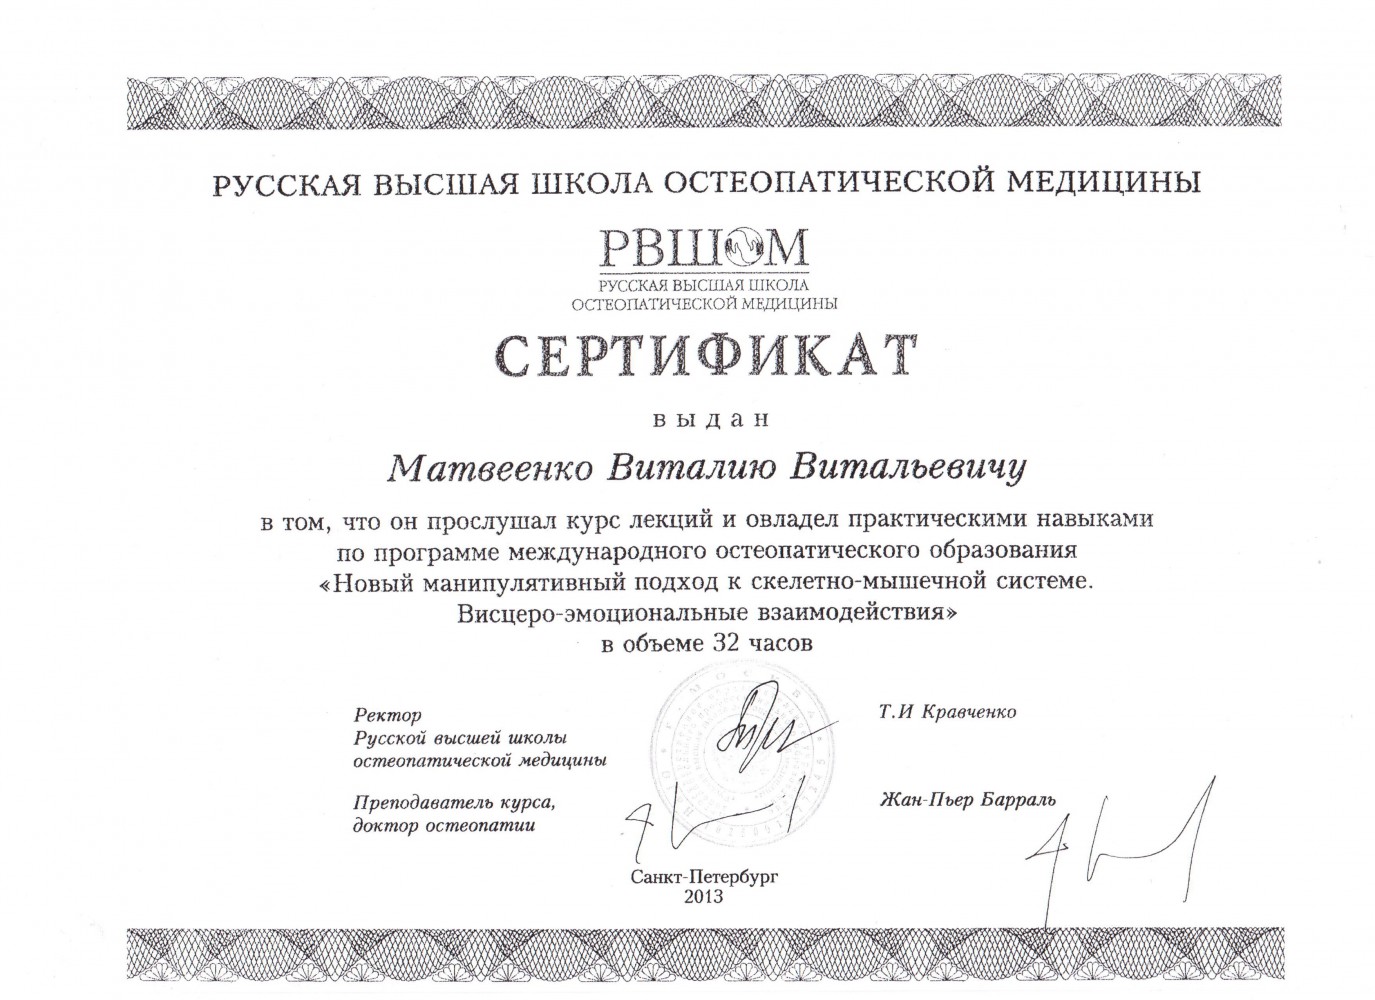 сертификат, фото №9